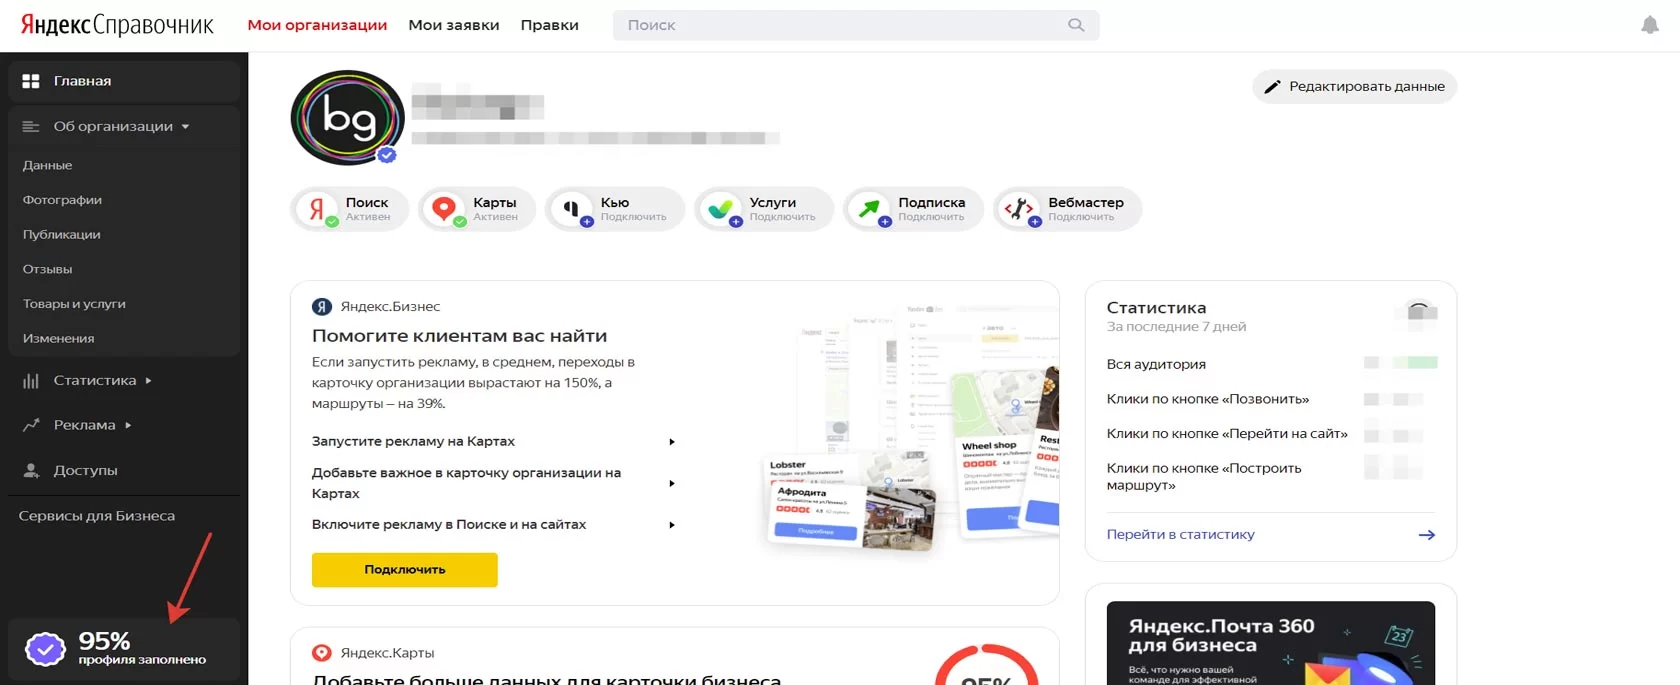 Яндекс справочник личный кабинет